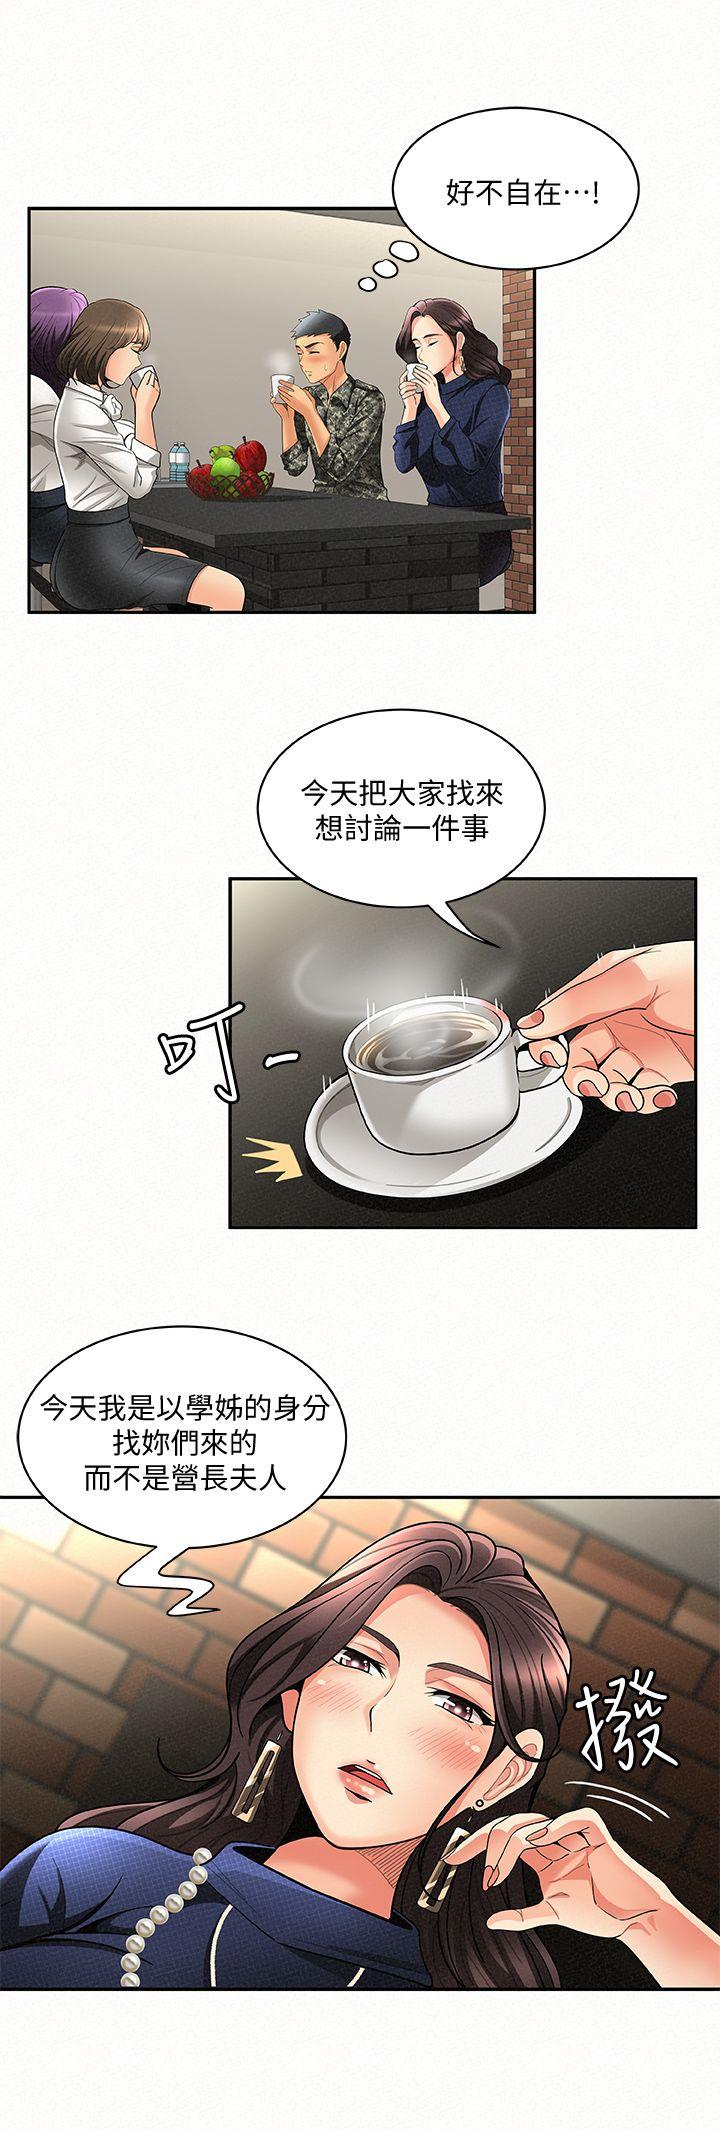 韩国污漫画 報告夫人 第3话-想不想嚐嚐其他有夫之妇? 9